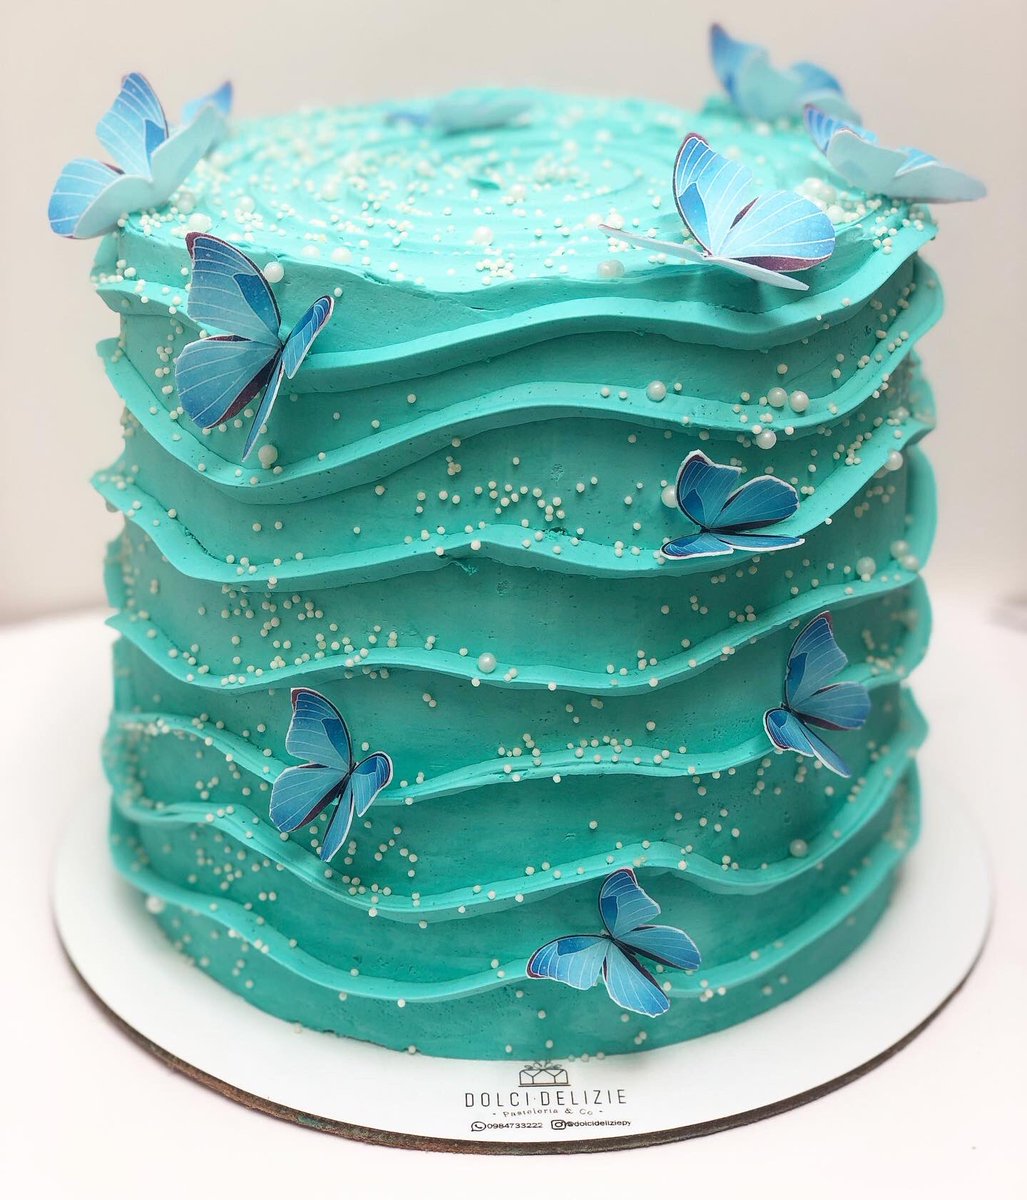 Farfalle Cake XL 😍🦋

Tendencia que se impone con todo! 🥰

Podes personalizar las tonalidades y sabores que prefieras!! 🙌🏻

📲0984-733-222
#farfallecake #buttercreamcake #tendencia2021 #dolcideliziepy